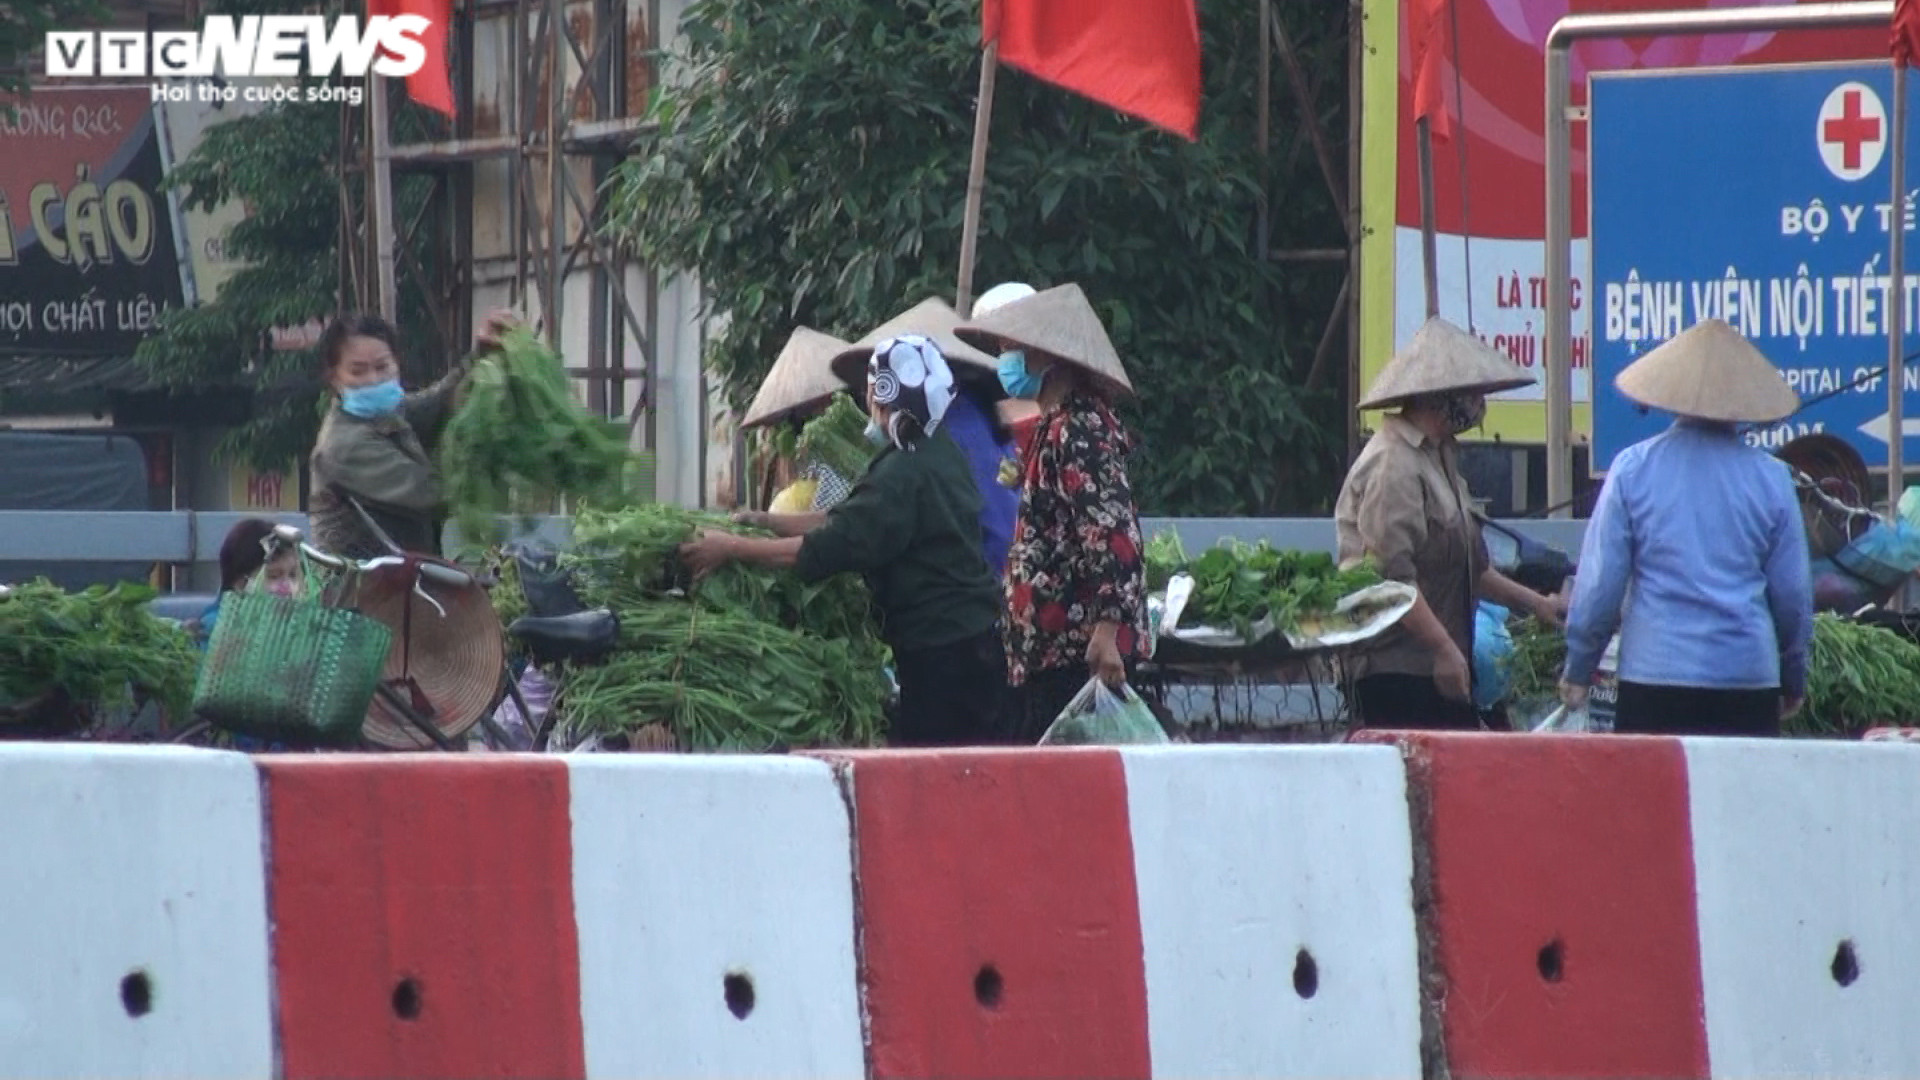 Hà Nội: Nhiều chợ cóc, chợ tạm vẫn hoạt động bất chấp lệnh cấm  - 5